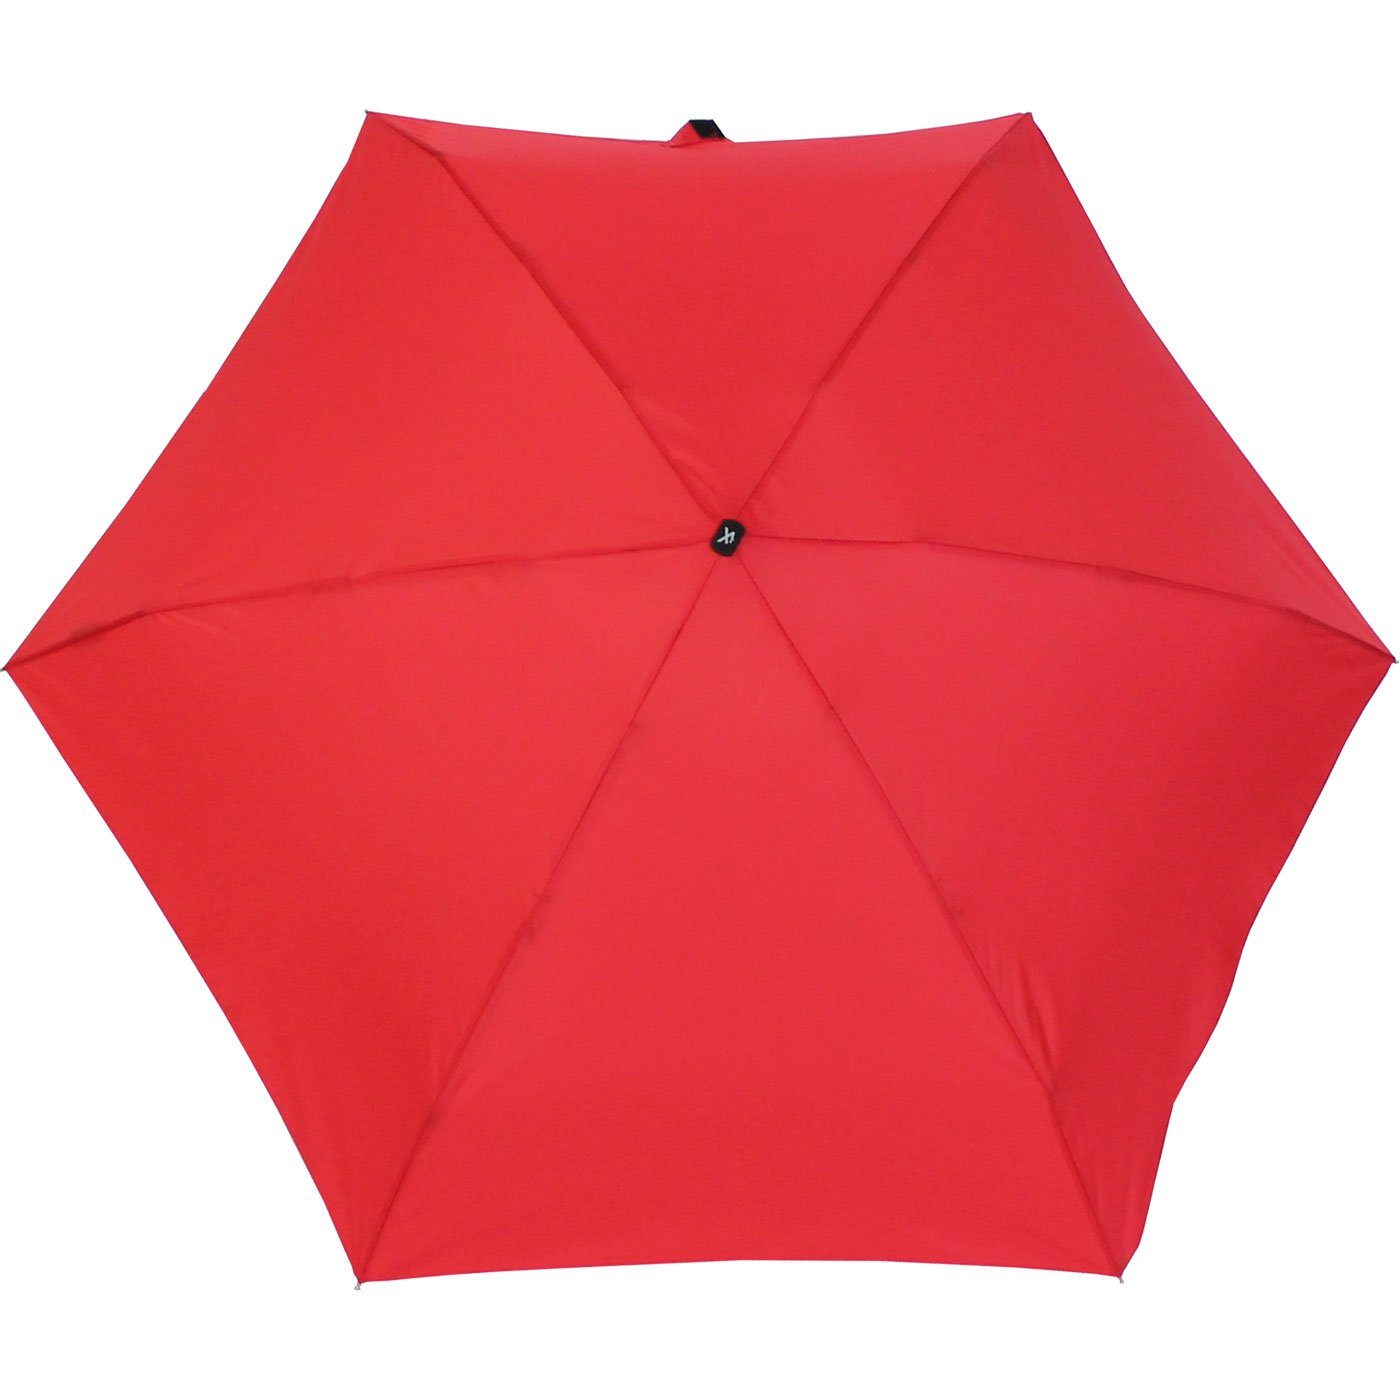 klein iX-brella winziger Super-Mini-Schirm - Taschenregenschirm Etui, Regenschirm im